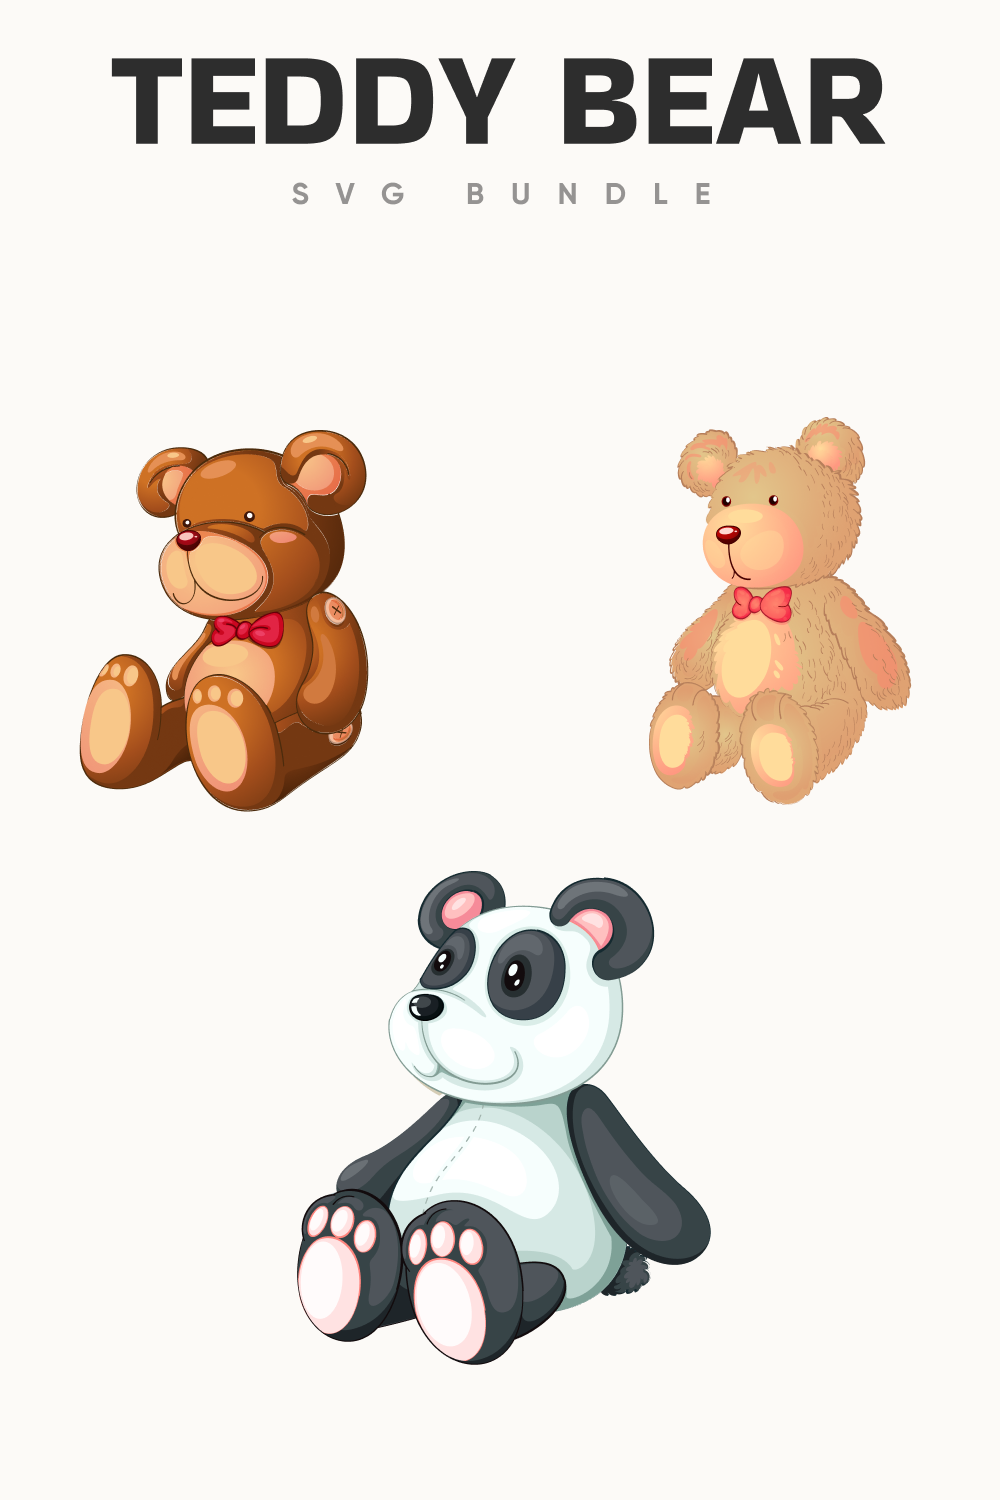 Soft teddy bears for children.